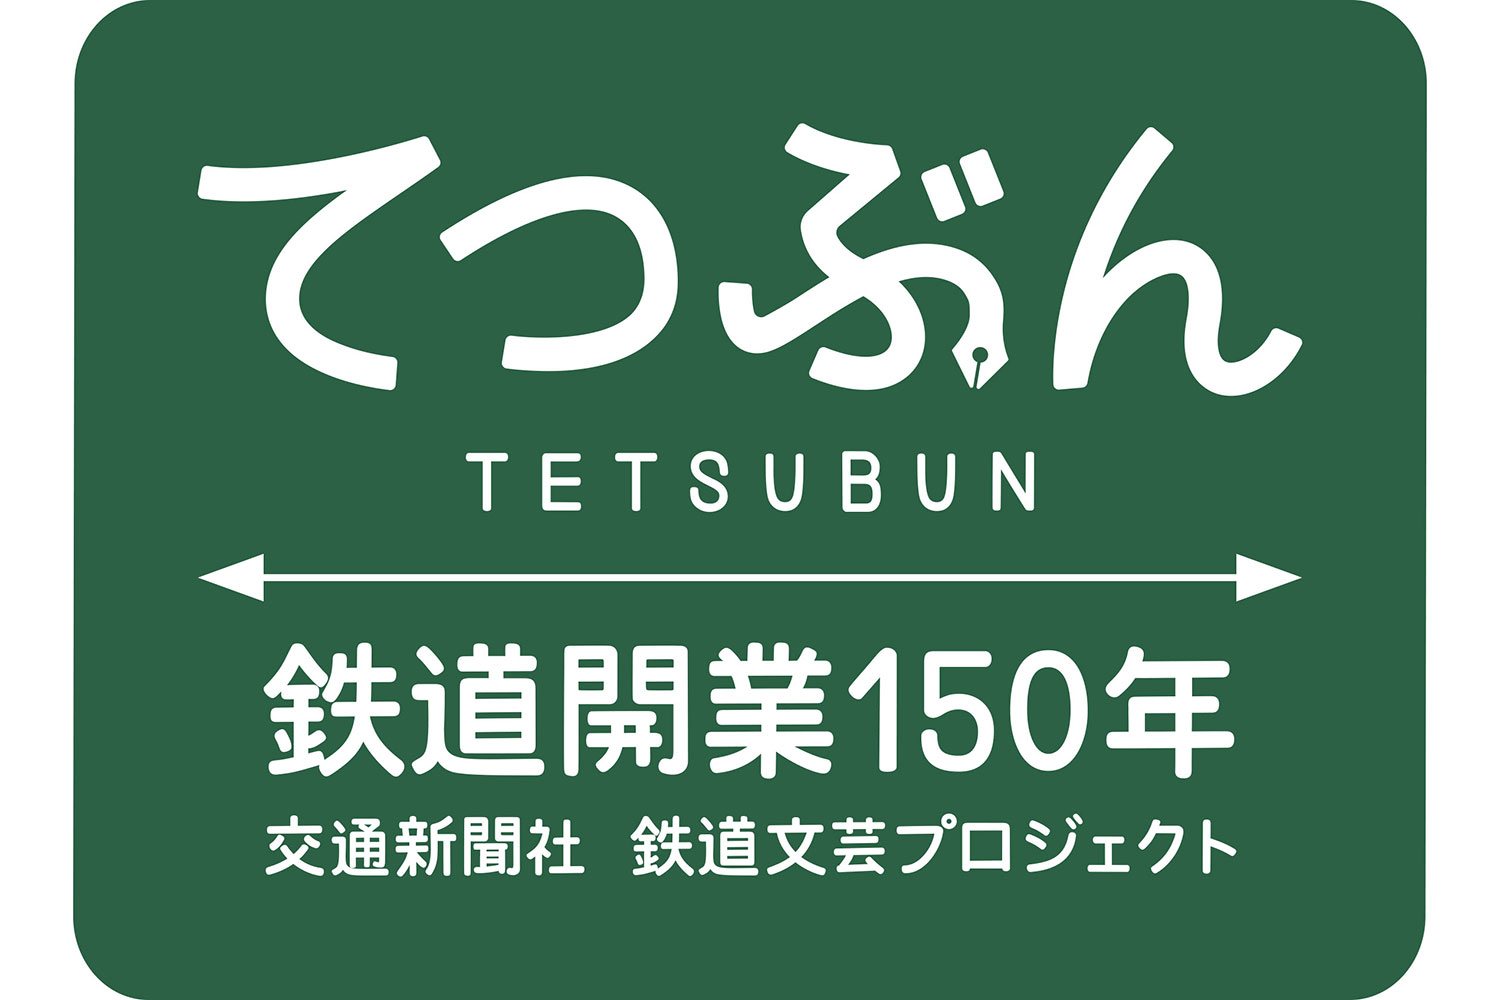 tetsubun_logo_220307-7